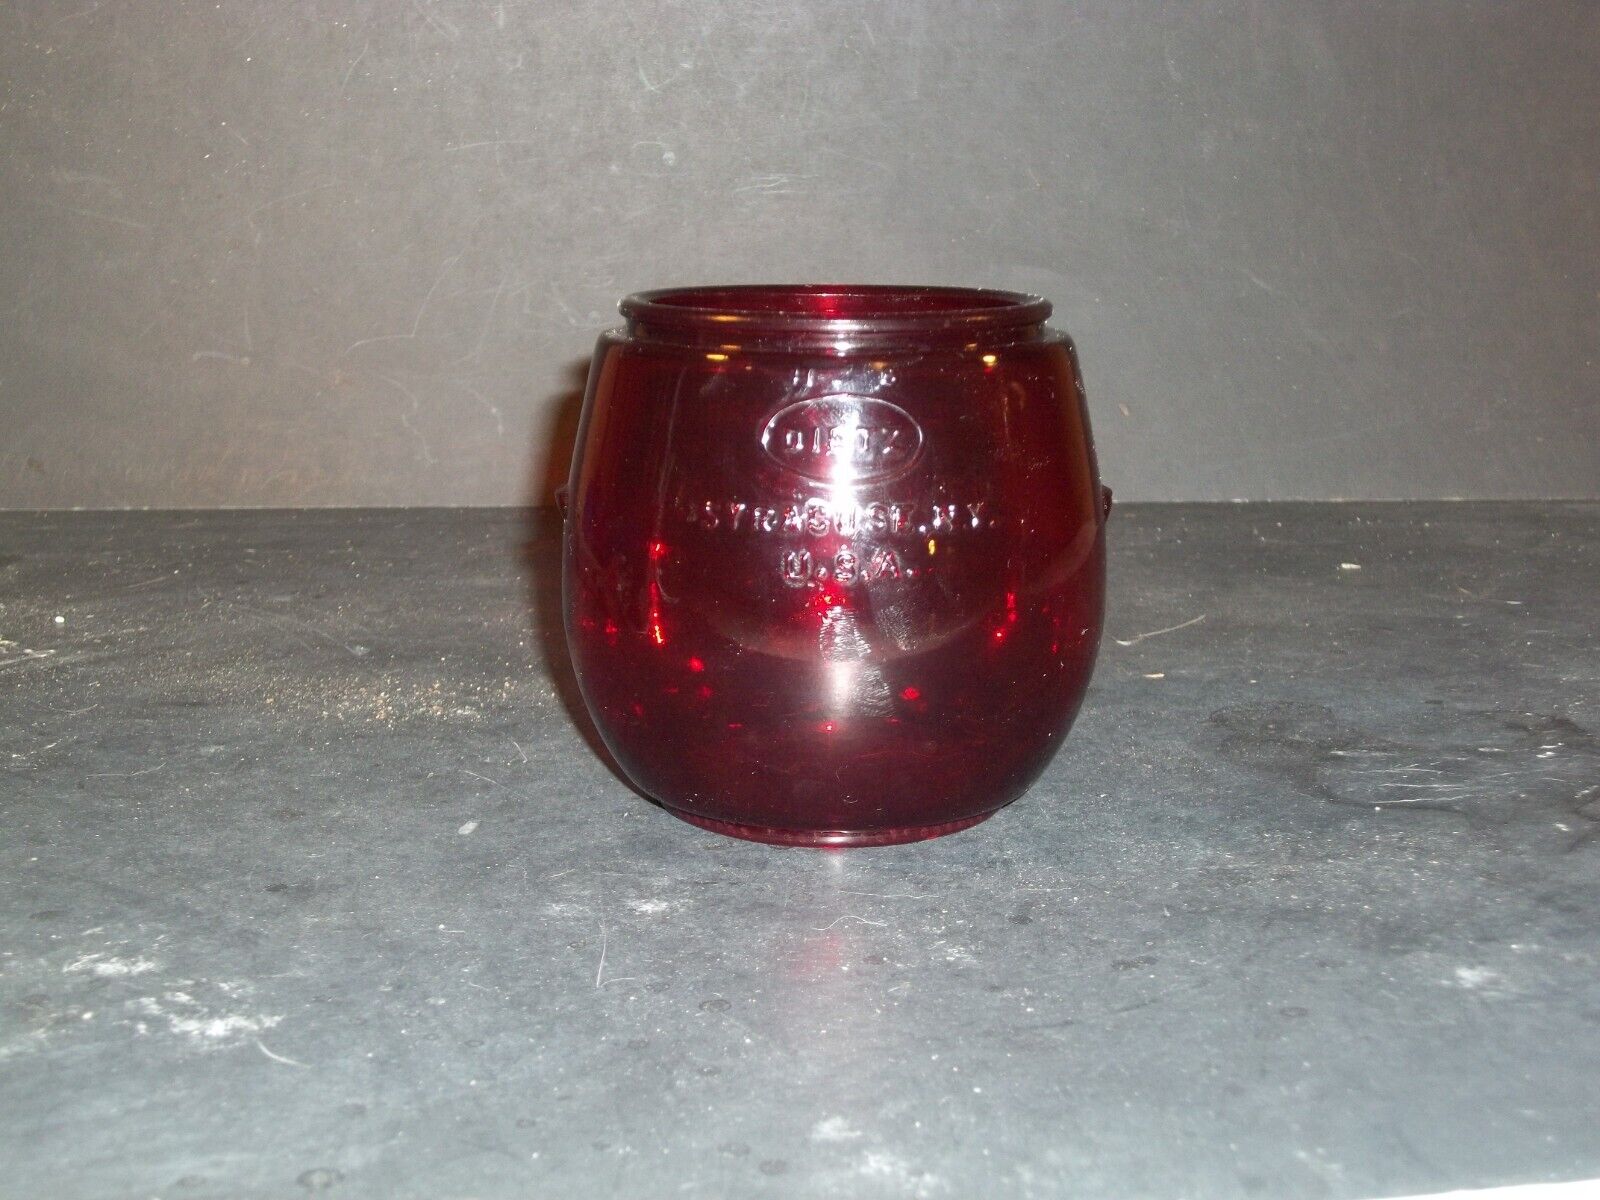 Dietz Little Wizard LOC-NOB Ruby Red Lantern Globe Syracuse N.Y.